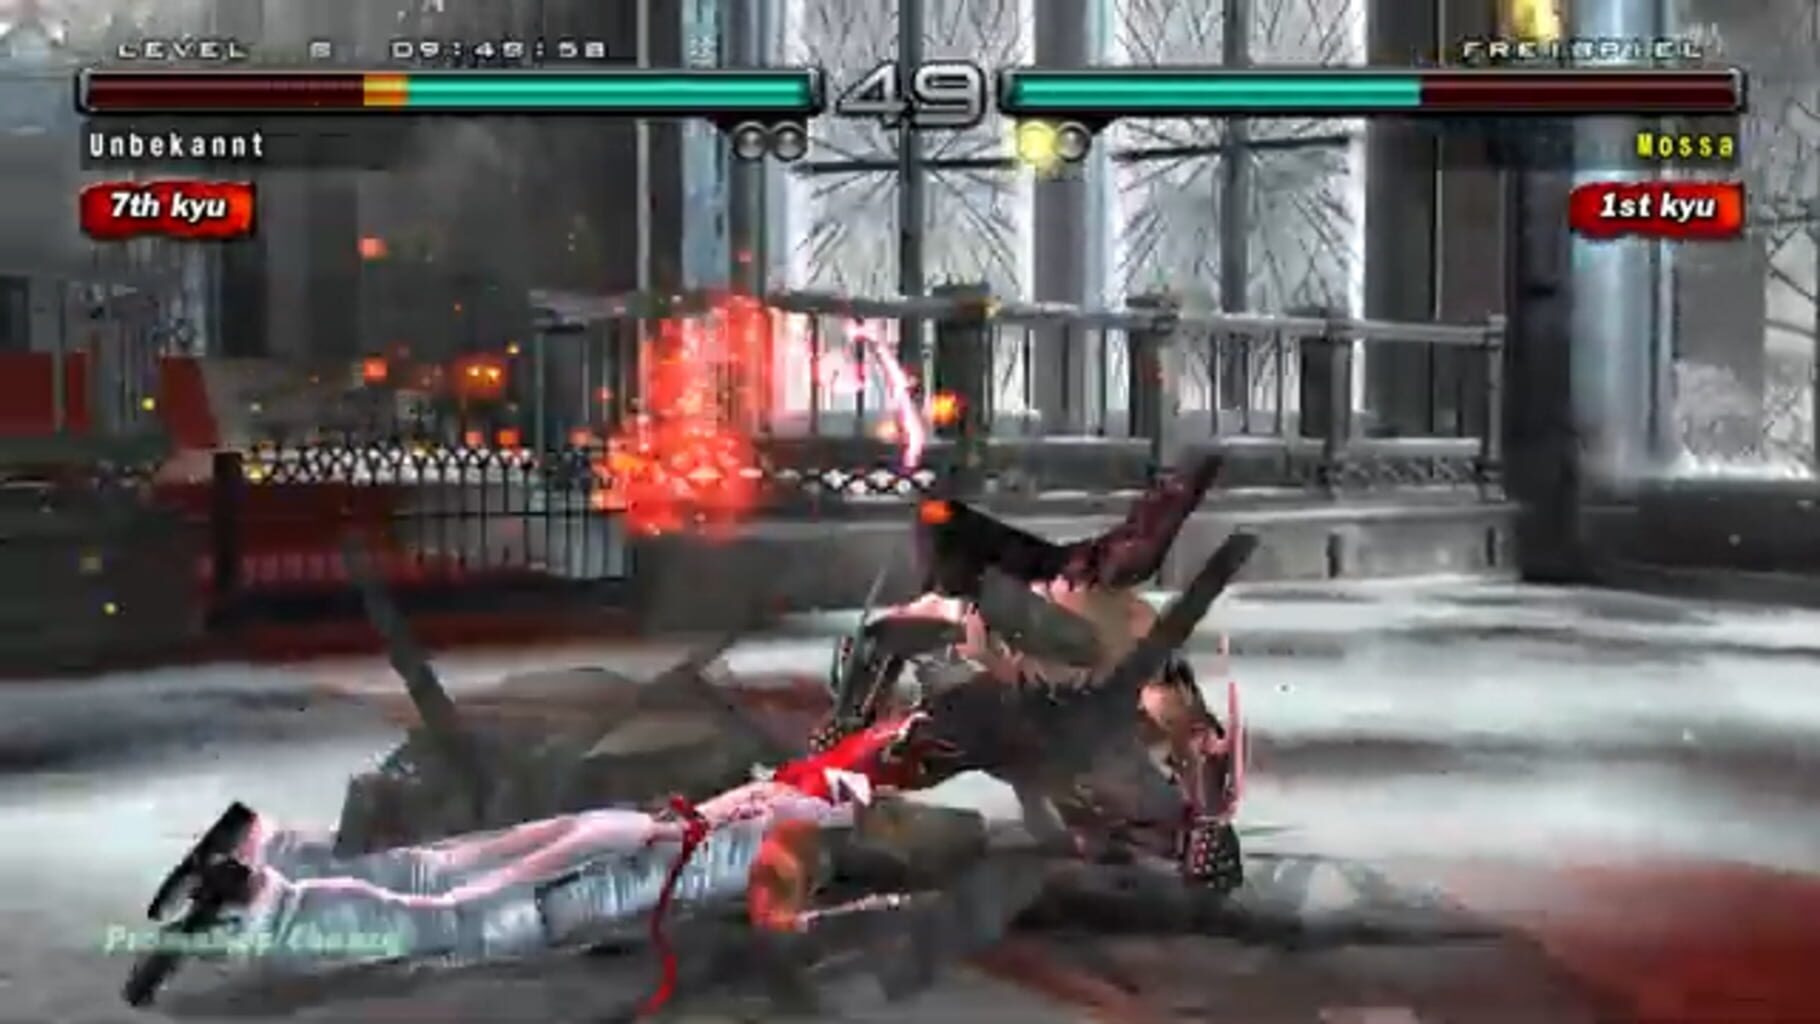 Tekken 5: Dark Resurrection Online Image